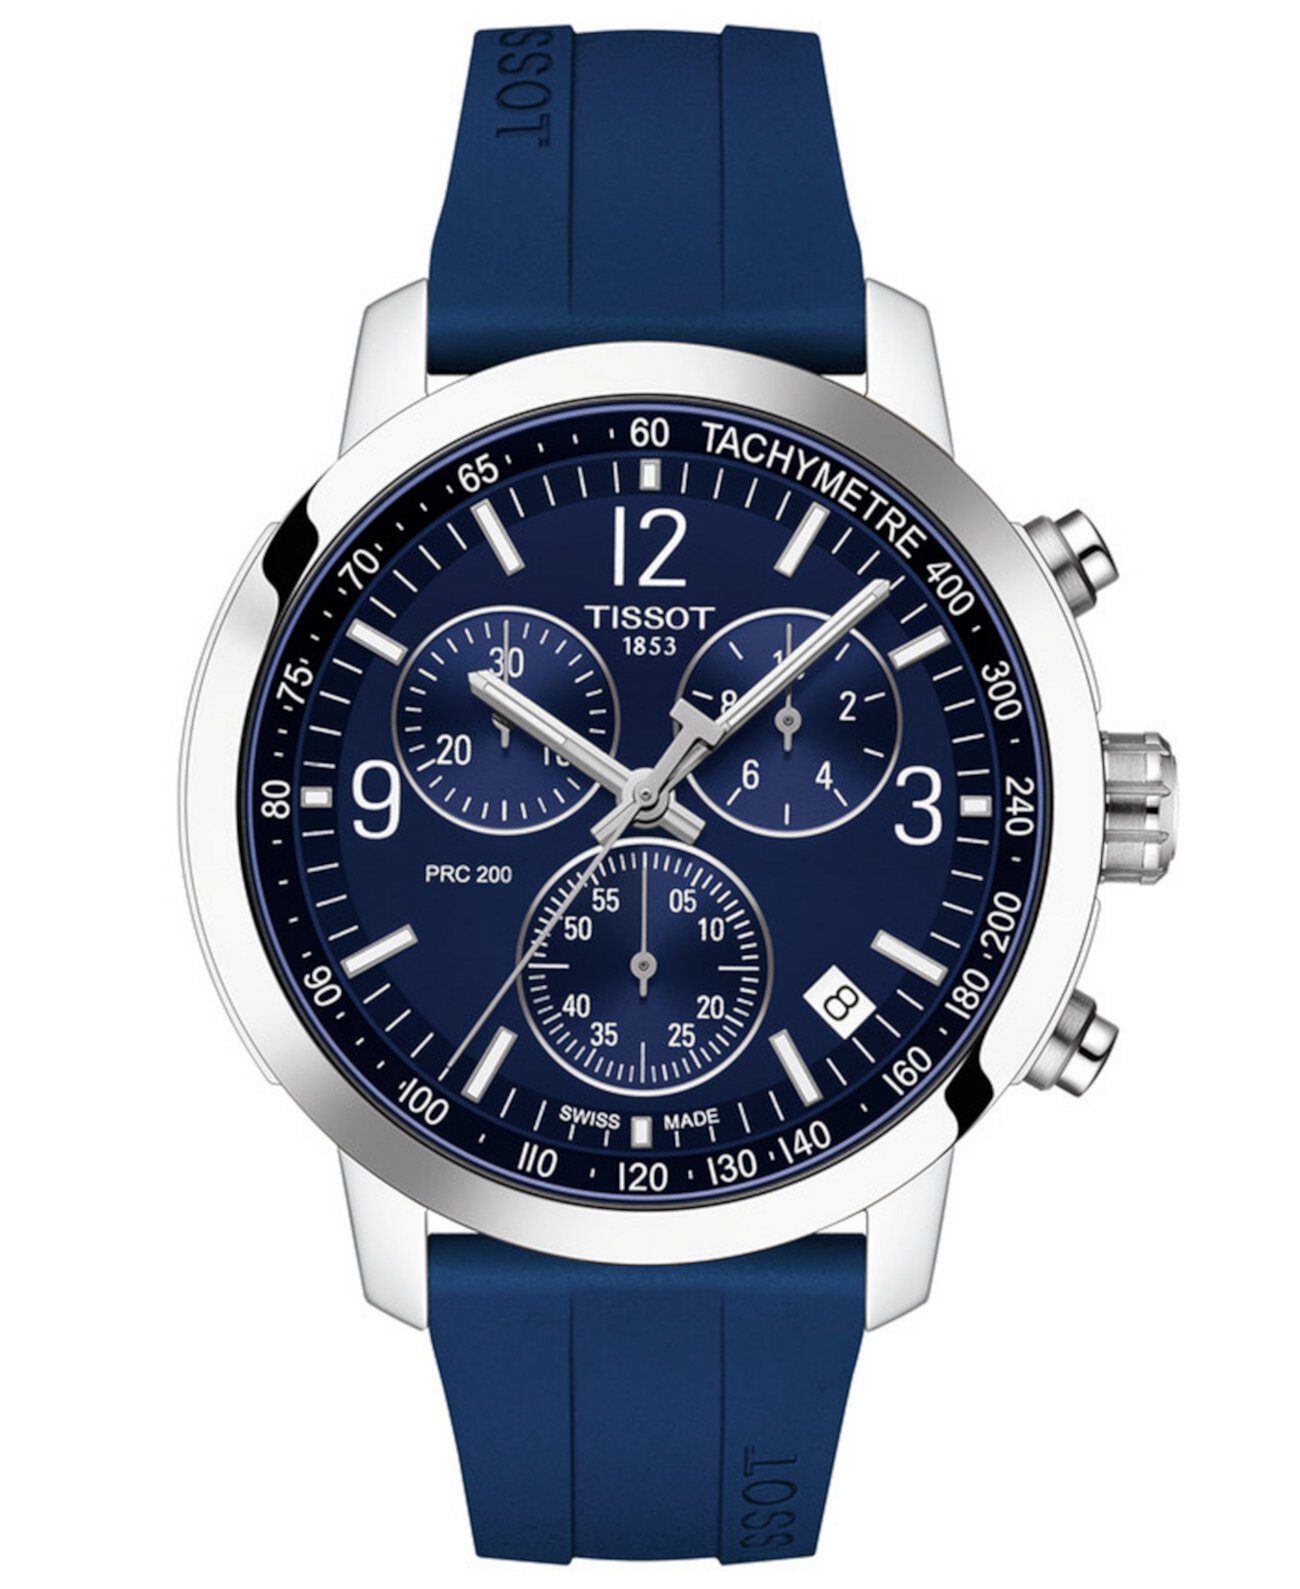 Мужские швейцарские часы с хронографом PRC 200 с синим каучуковым ремешком 43 мм Tissot